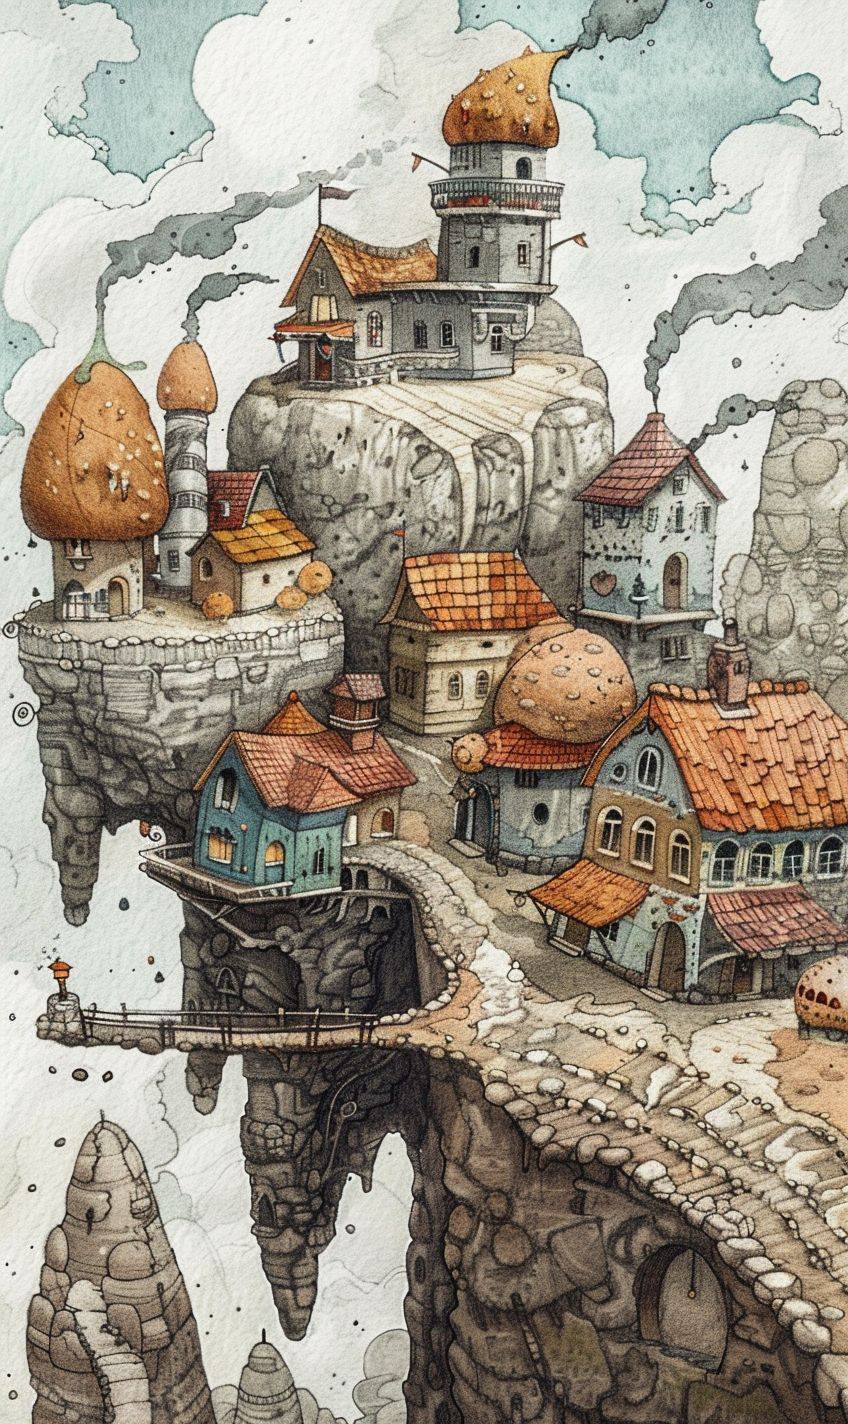 リニアース風のイラストで、パン粉で作られた小さな世界であるクラムランドを描く。パリパリのクラストでできた家やパン粉でできた愛らしい生物がある幻想的な風景が描かれています--ar 3:5